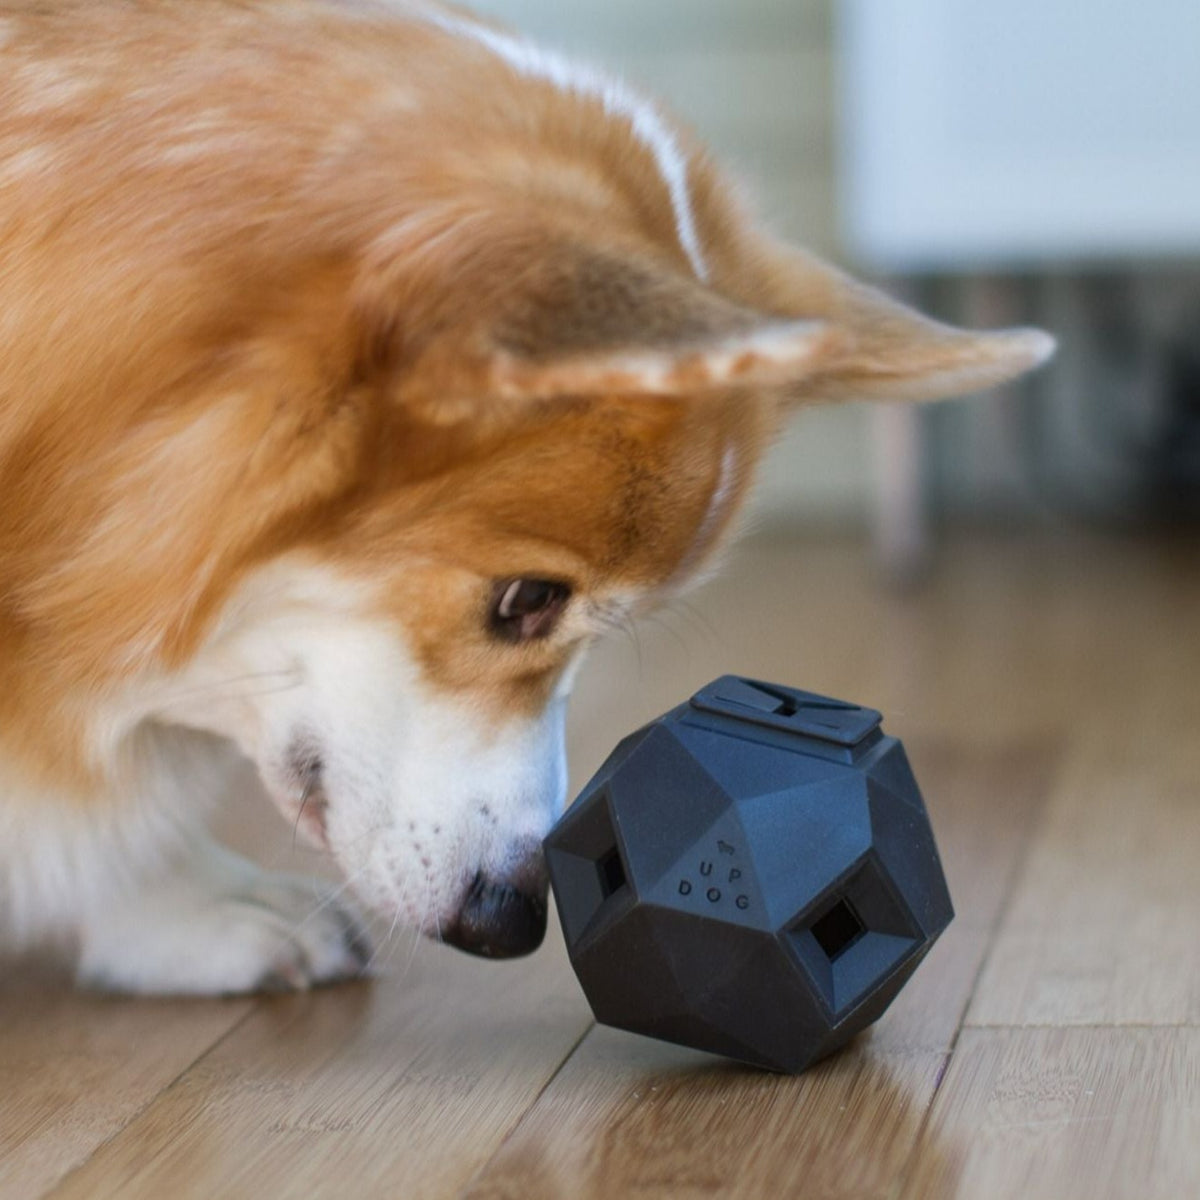 The Odin Dog Treat Dispenser Toy Slate Grey - The Tail Story